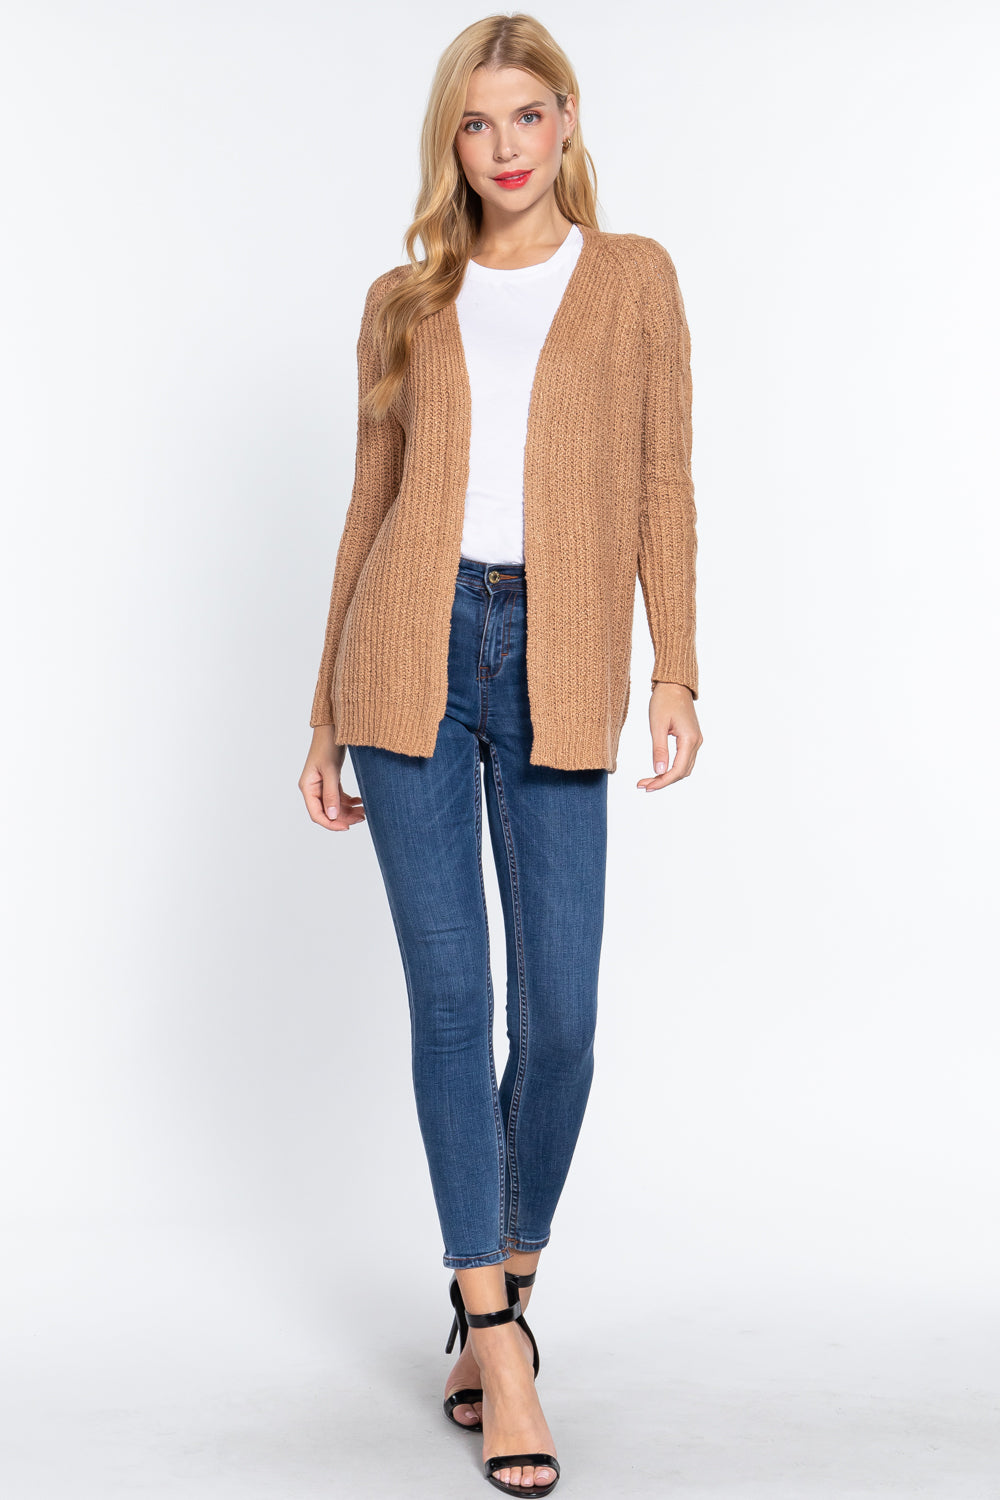 Khaki Long Sleeve Open Front Sweater Cardigan Coats & Jackets jehouze 